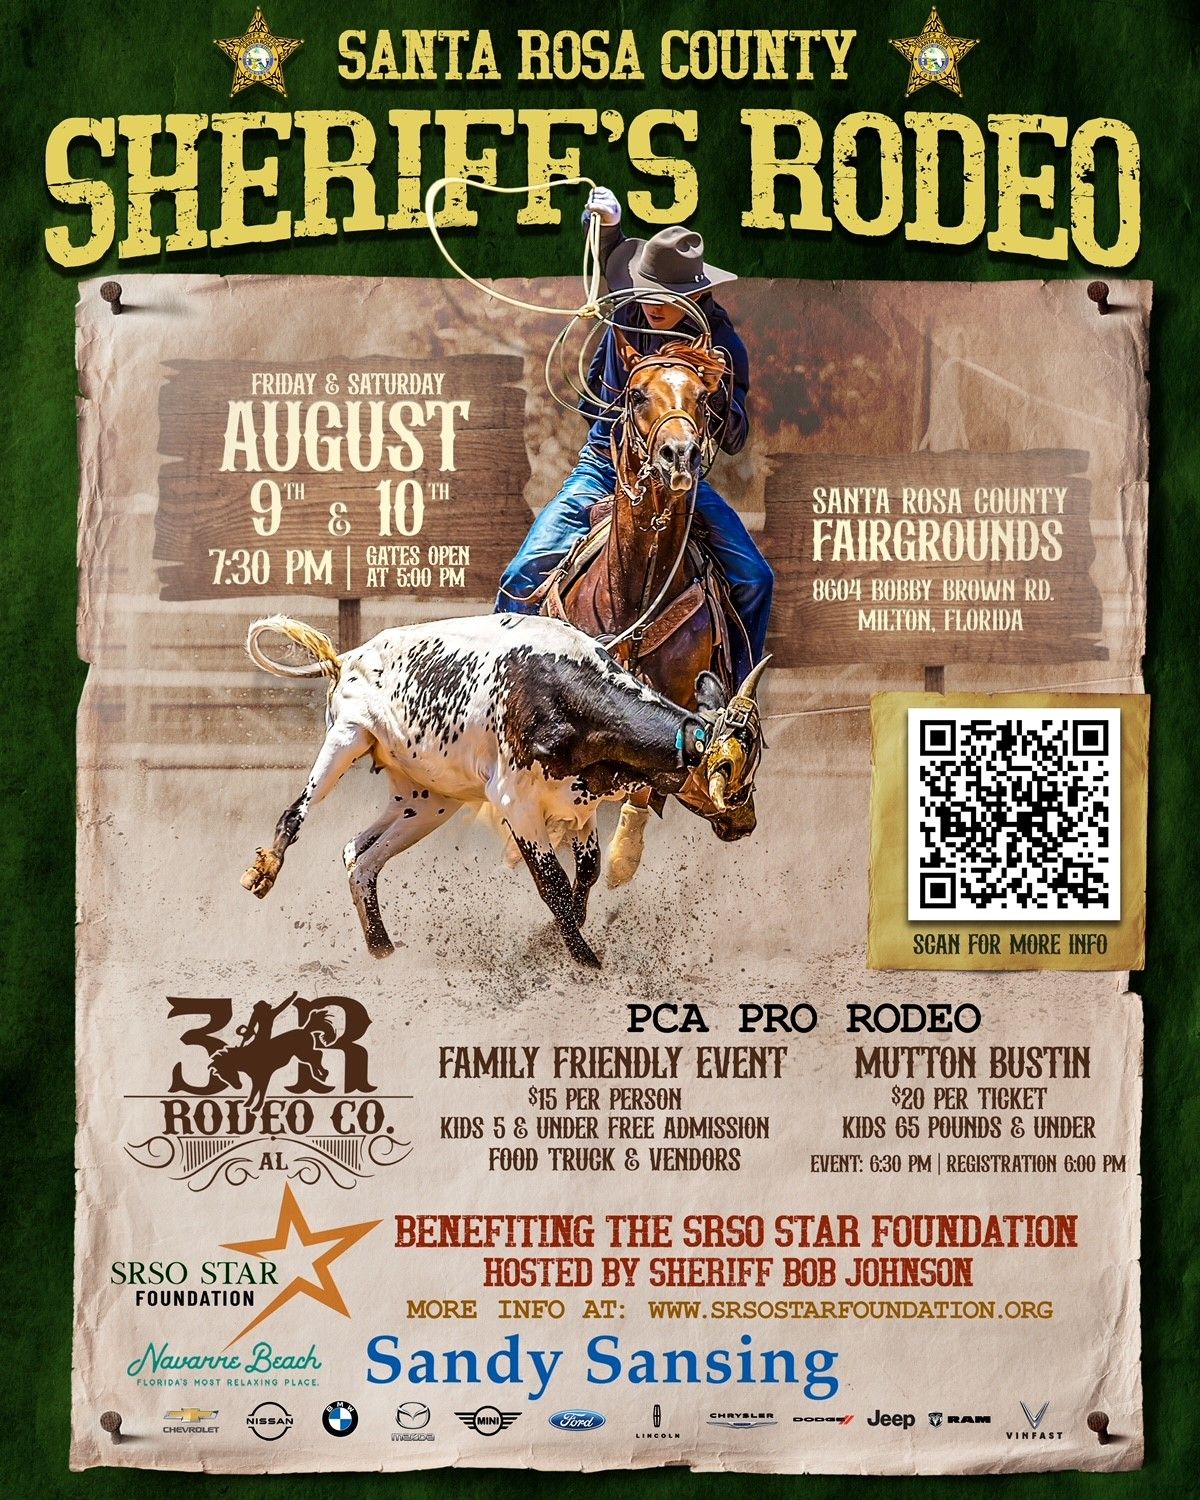 Santa Rosa County Sheriff's Rodeo!